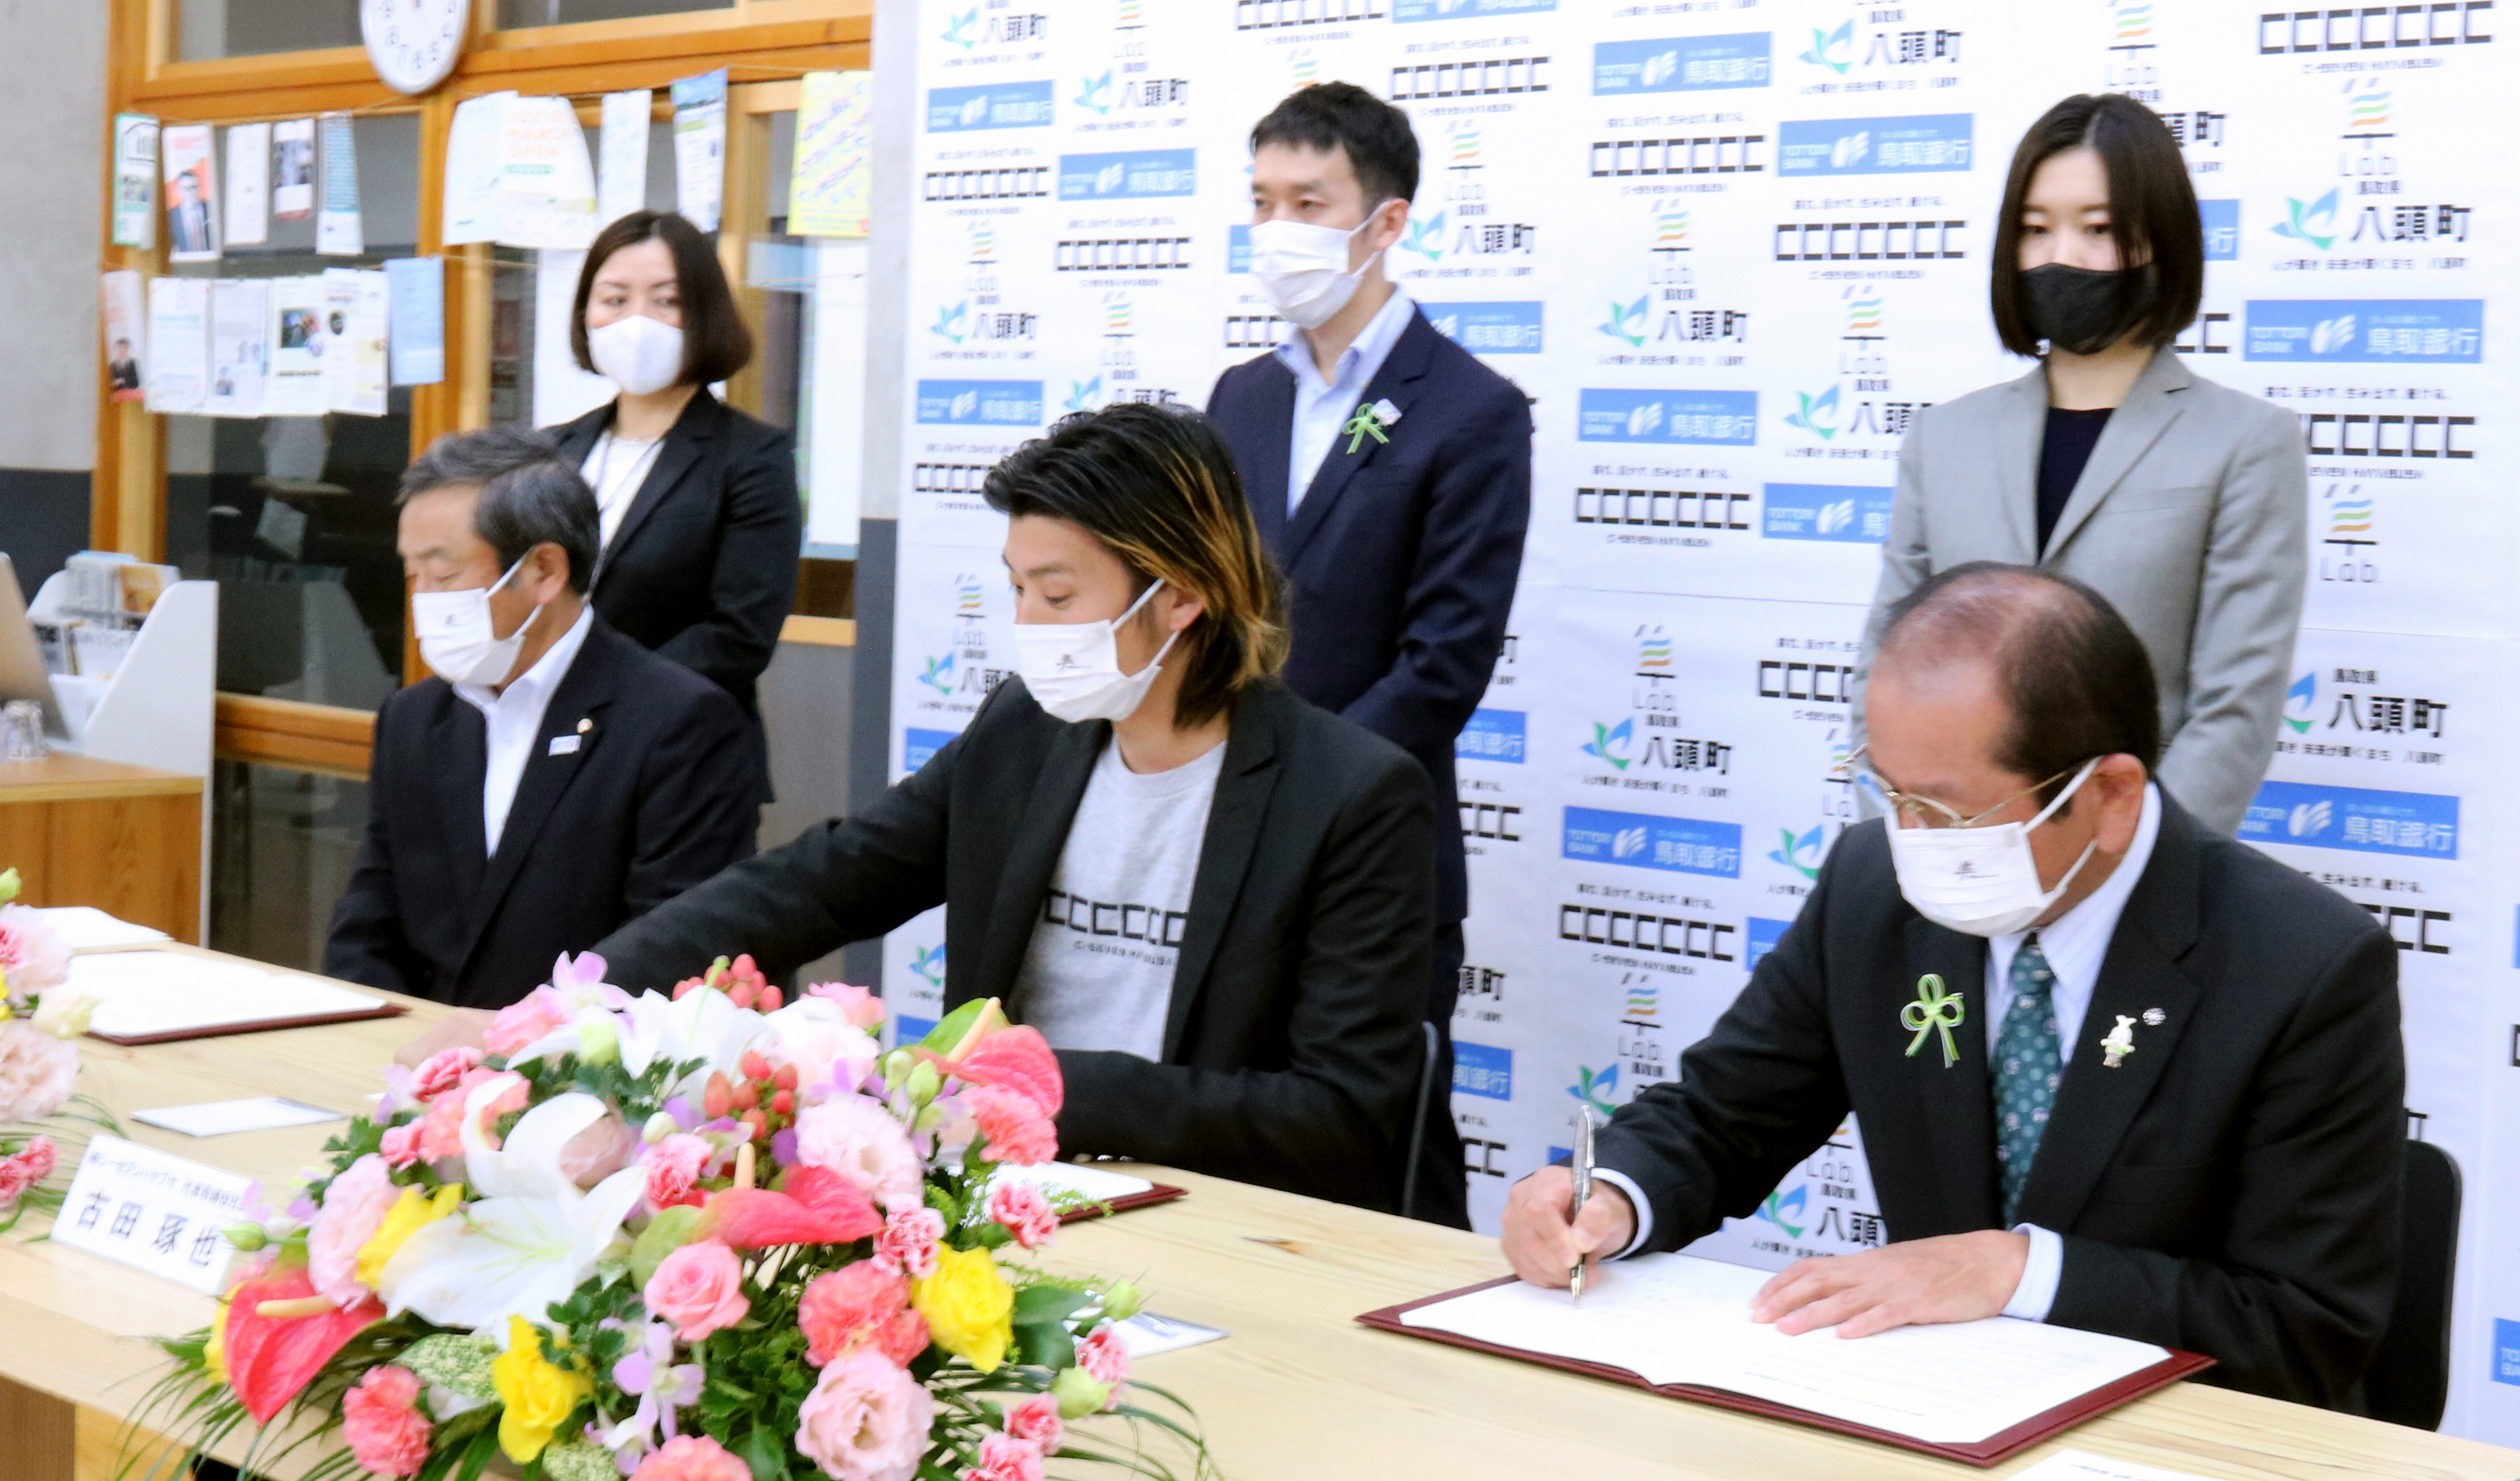 締結式で協定書に署名する平井頭取、古田社長および吉田町長の写真